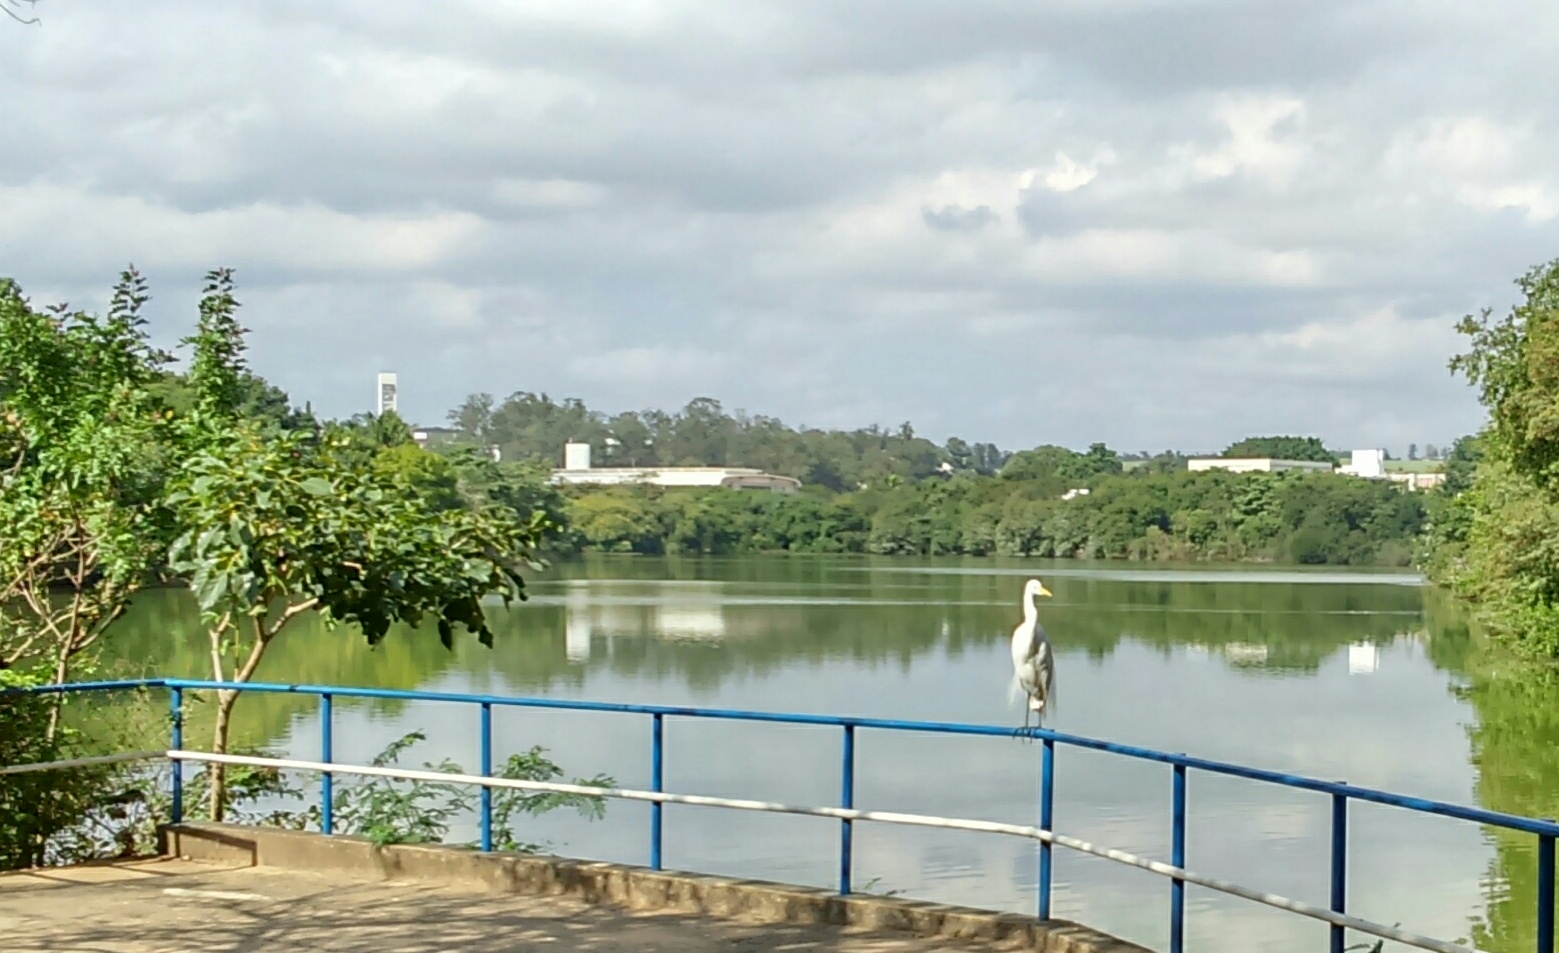 Parque Ecológico Hermógenes Leitão Filho